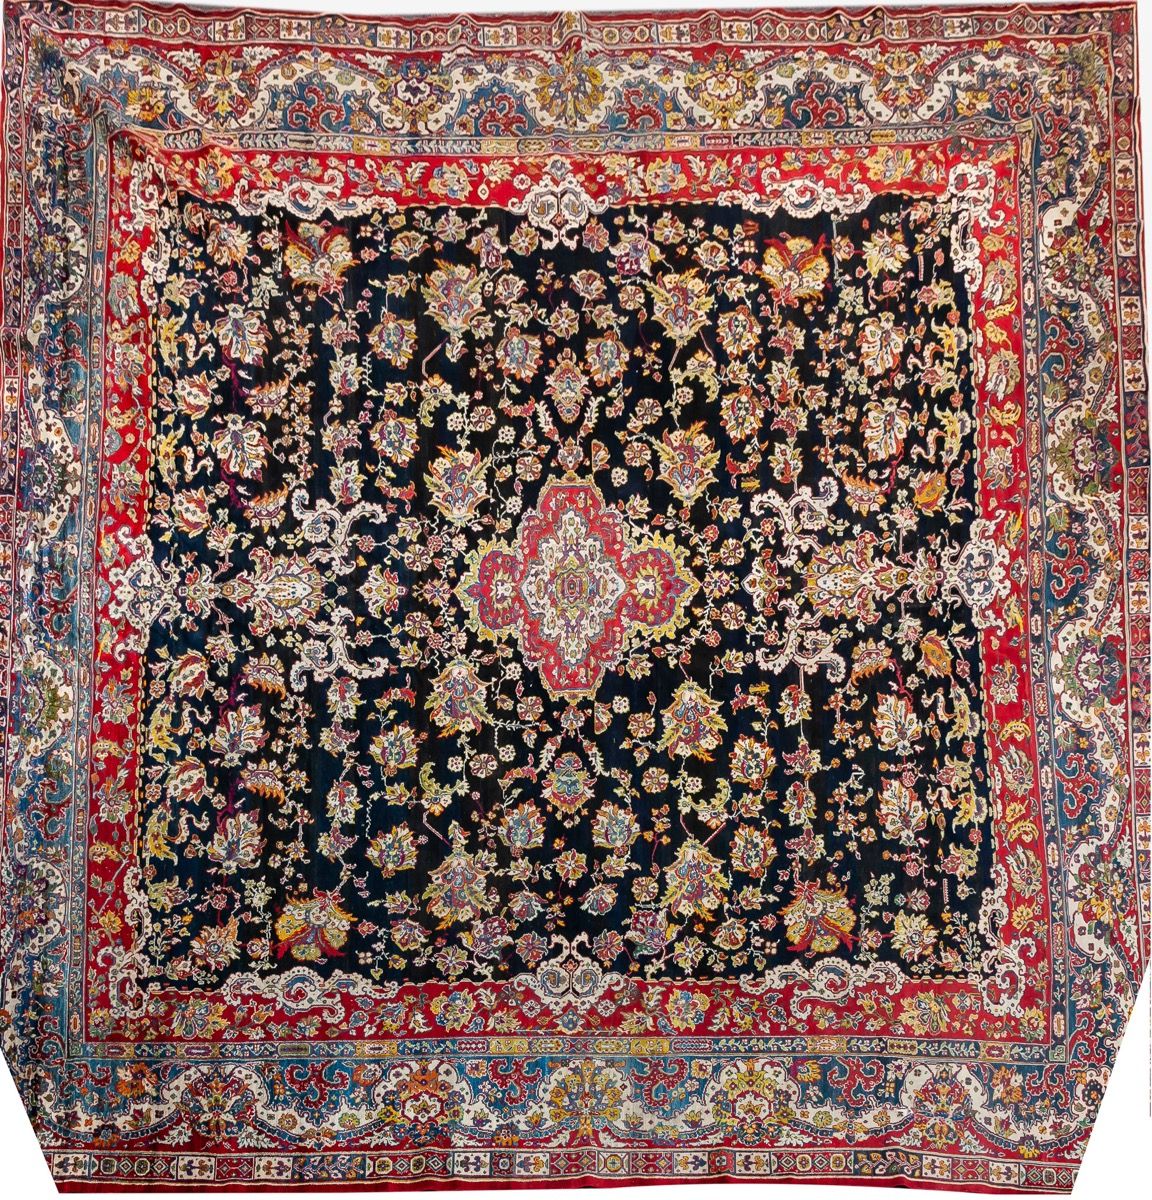 Null Tappeto persiano in lana decorato con volute vegetali su campo nero
480 x 5&hellip;